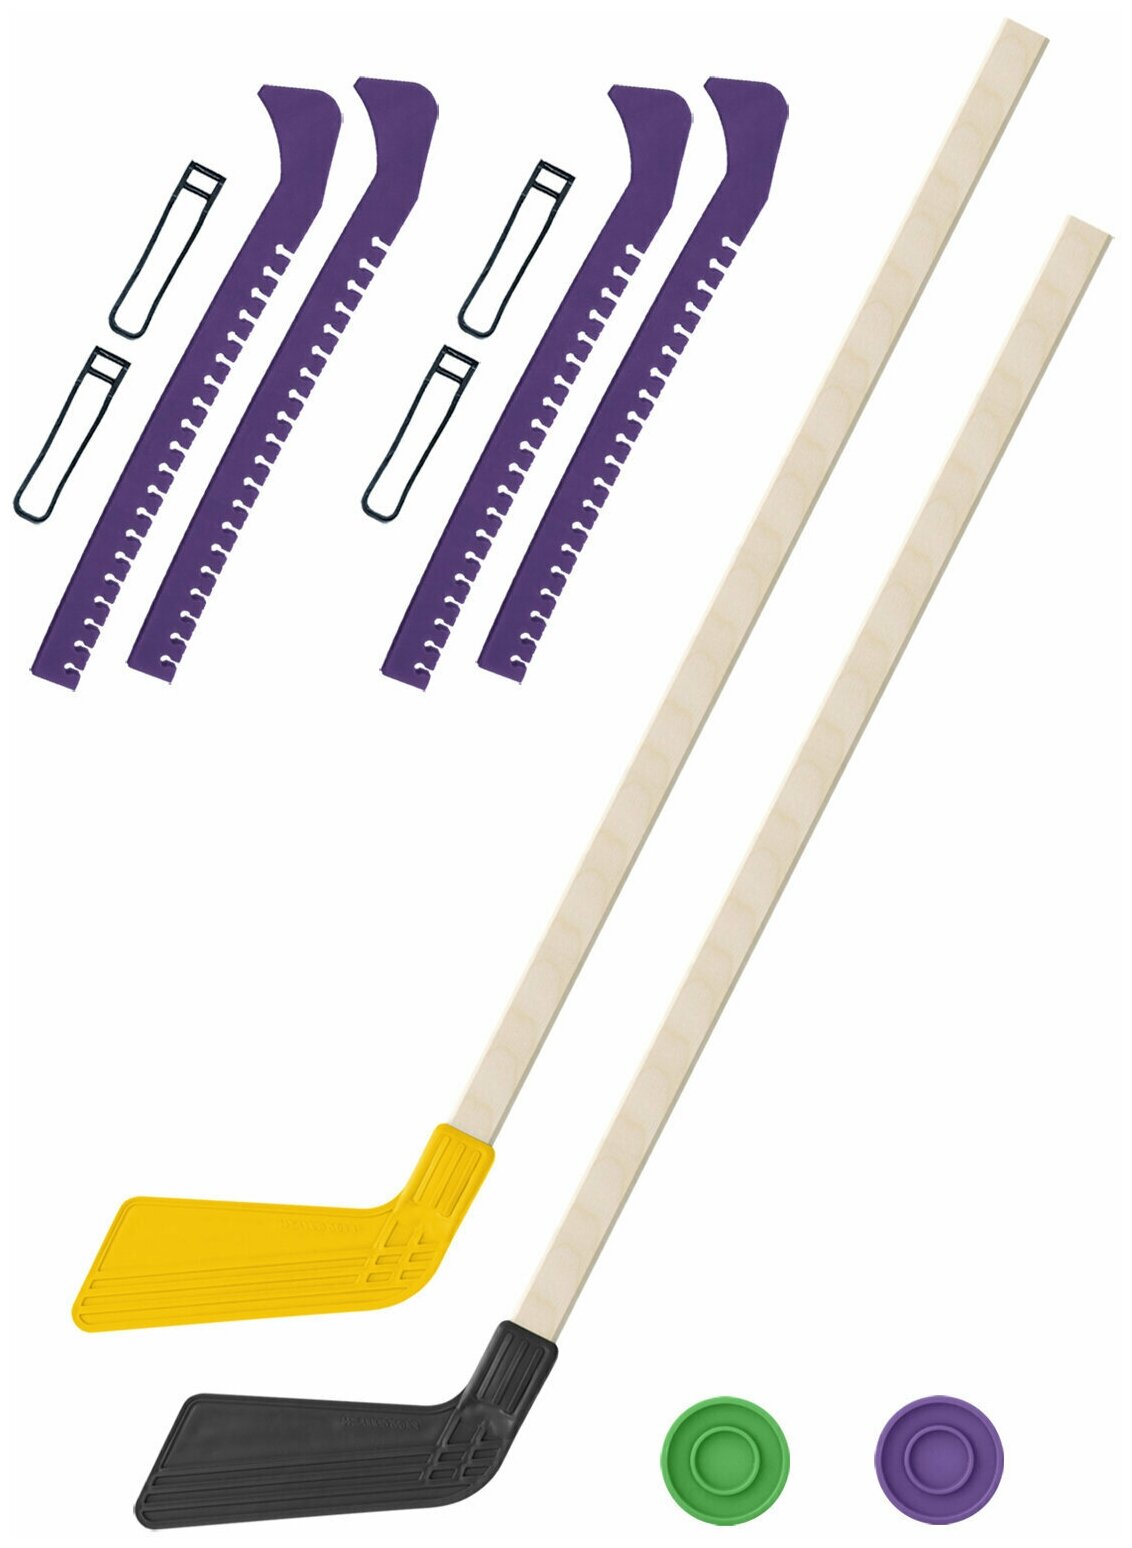 Детский хоккейный набор для игр на улице Клюшка хоккейная детская 2 шт жёлтая и чёрная 80 см. + 2 шайбы + Чехлы для коньков фиолетовые - 2 шт.